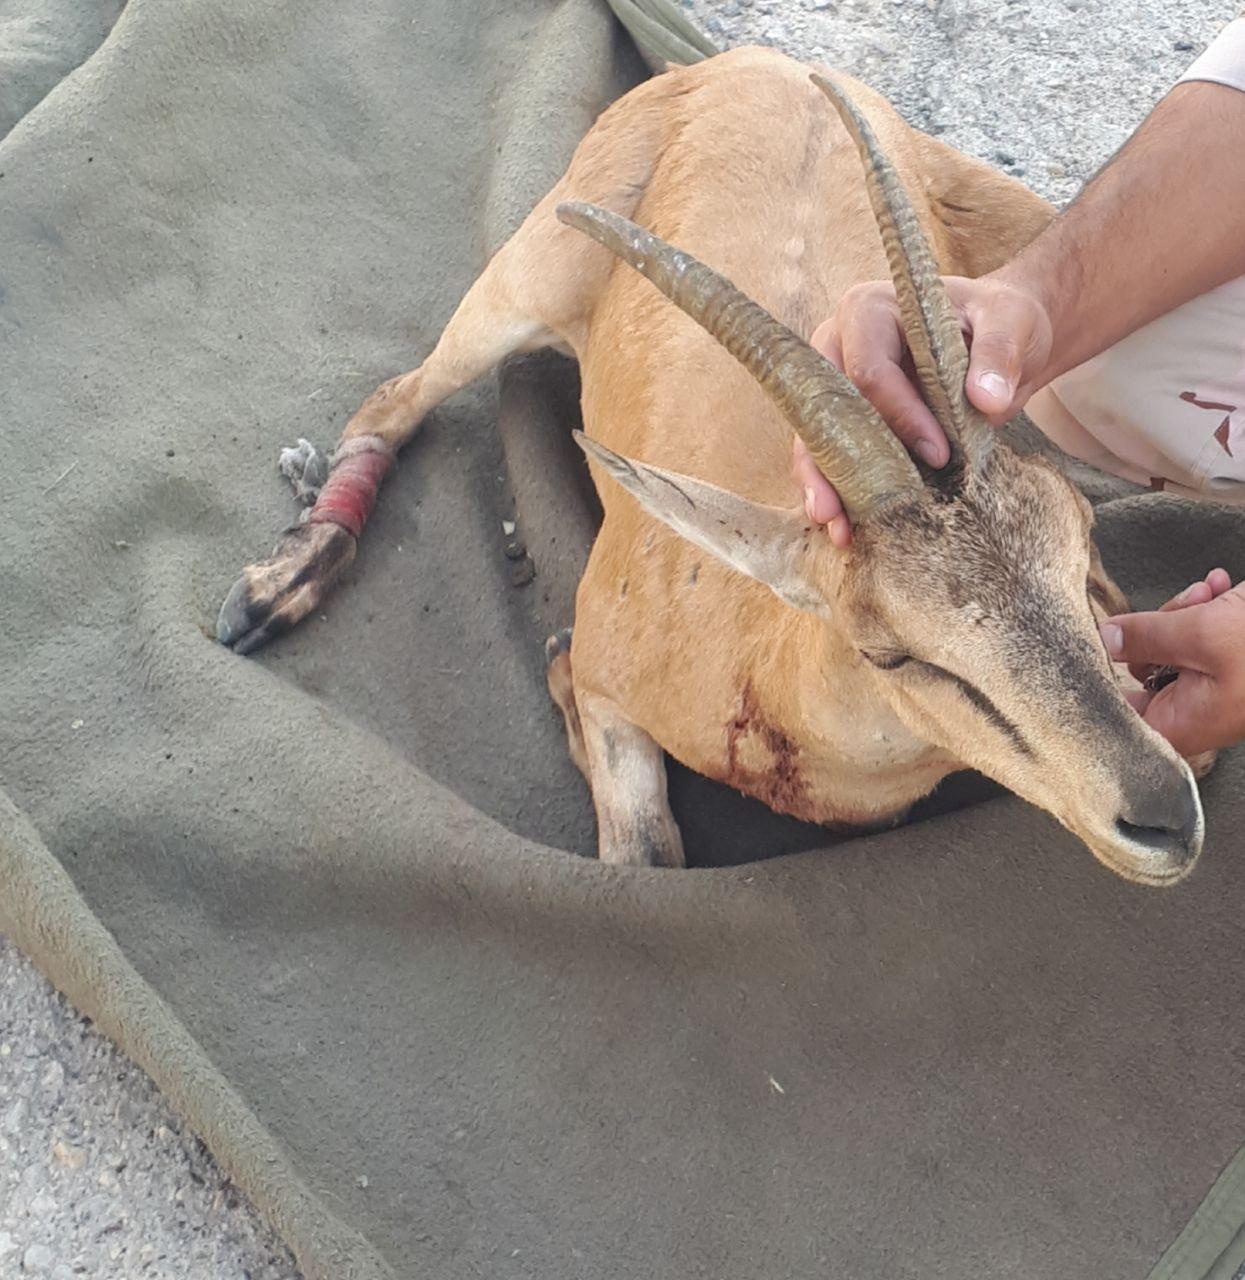 یک راس بز وحشی در ماکو قربانی طمع شکارچیان شد